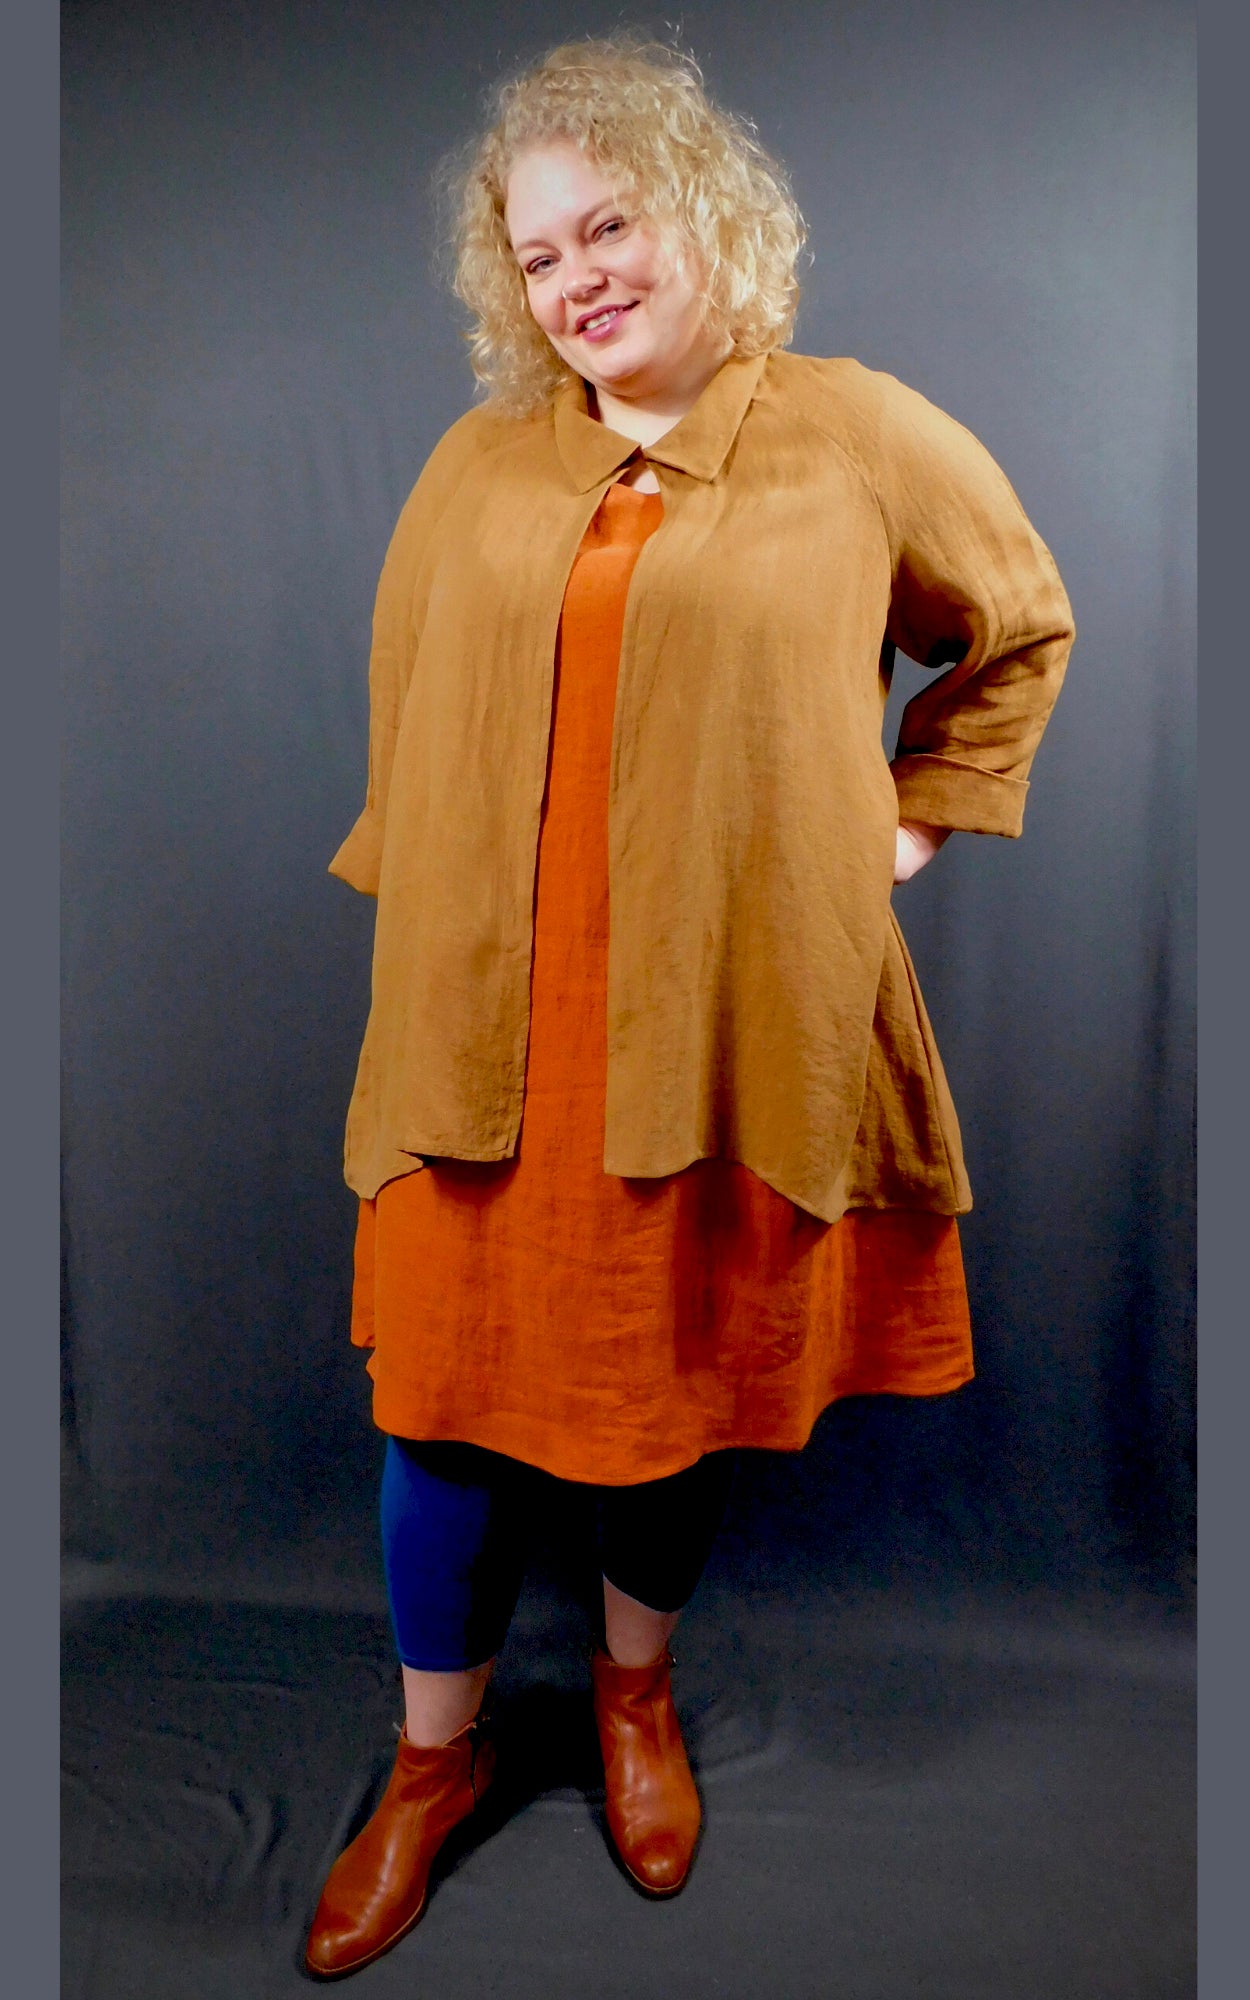 100% Linen Colour Cognac (Orange)  Sleeveless Dress with pockets worn under 100% Linen Raglan Sleeve Shirt Jacket Colour Caramel